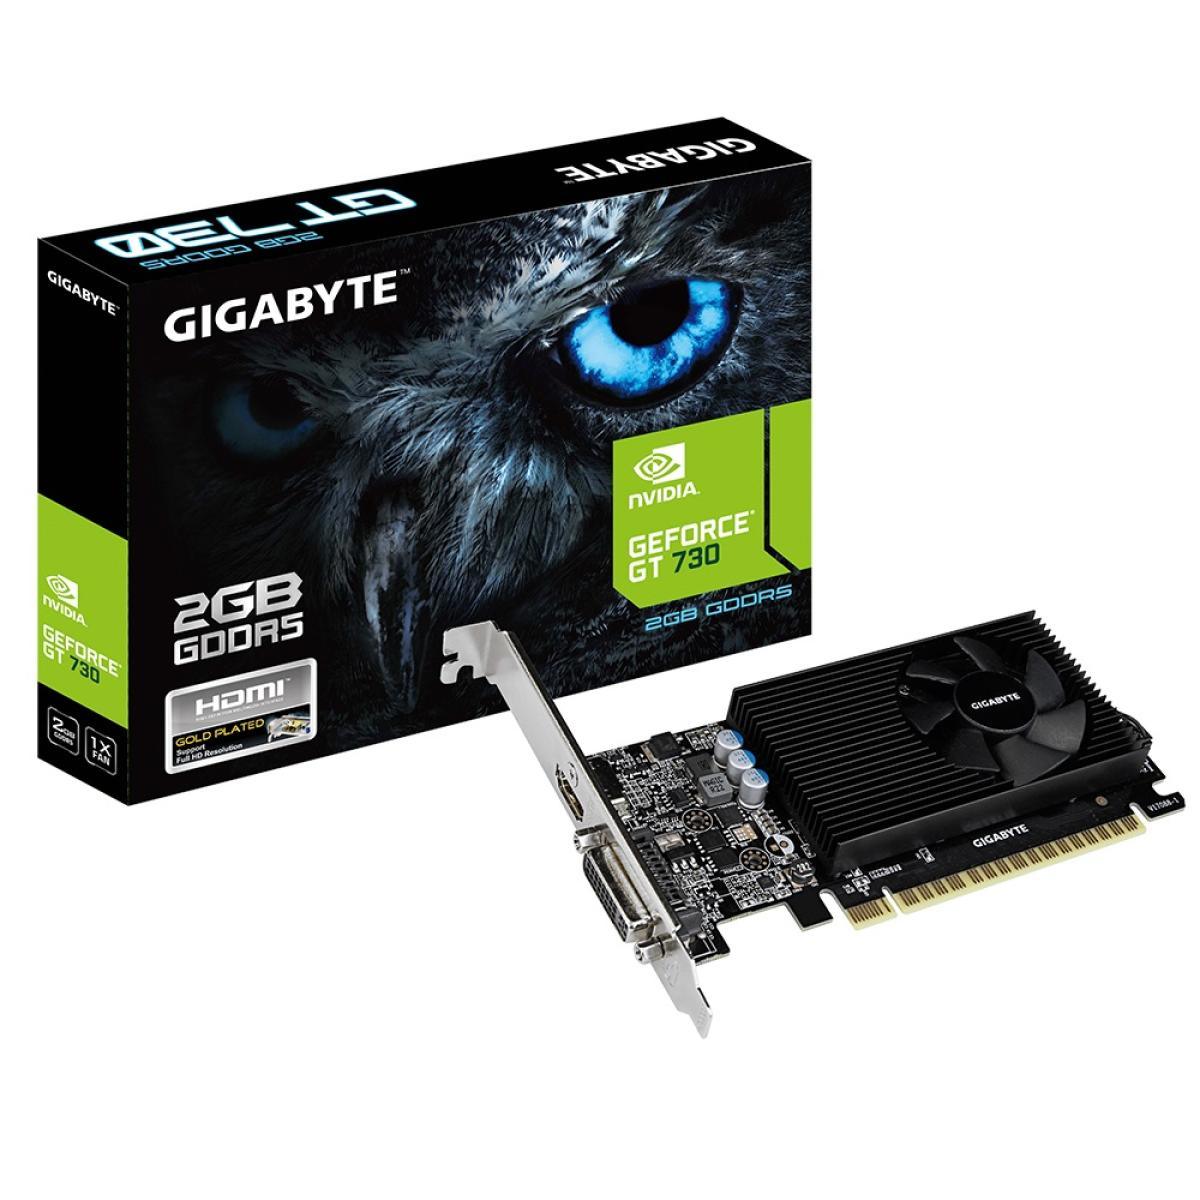 GIGABYTE GPU GIGABYTE Nvidia GeForce GT 730 2GB GDDR5 - Graphics Card